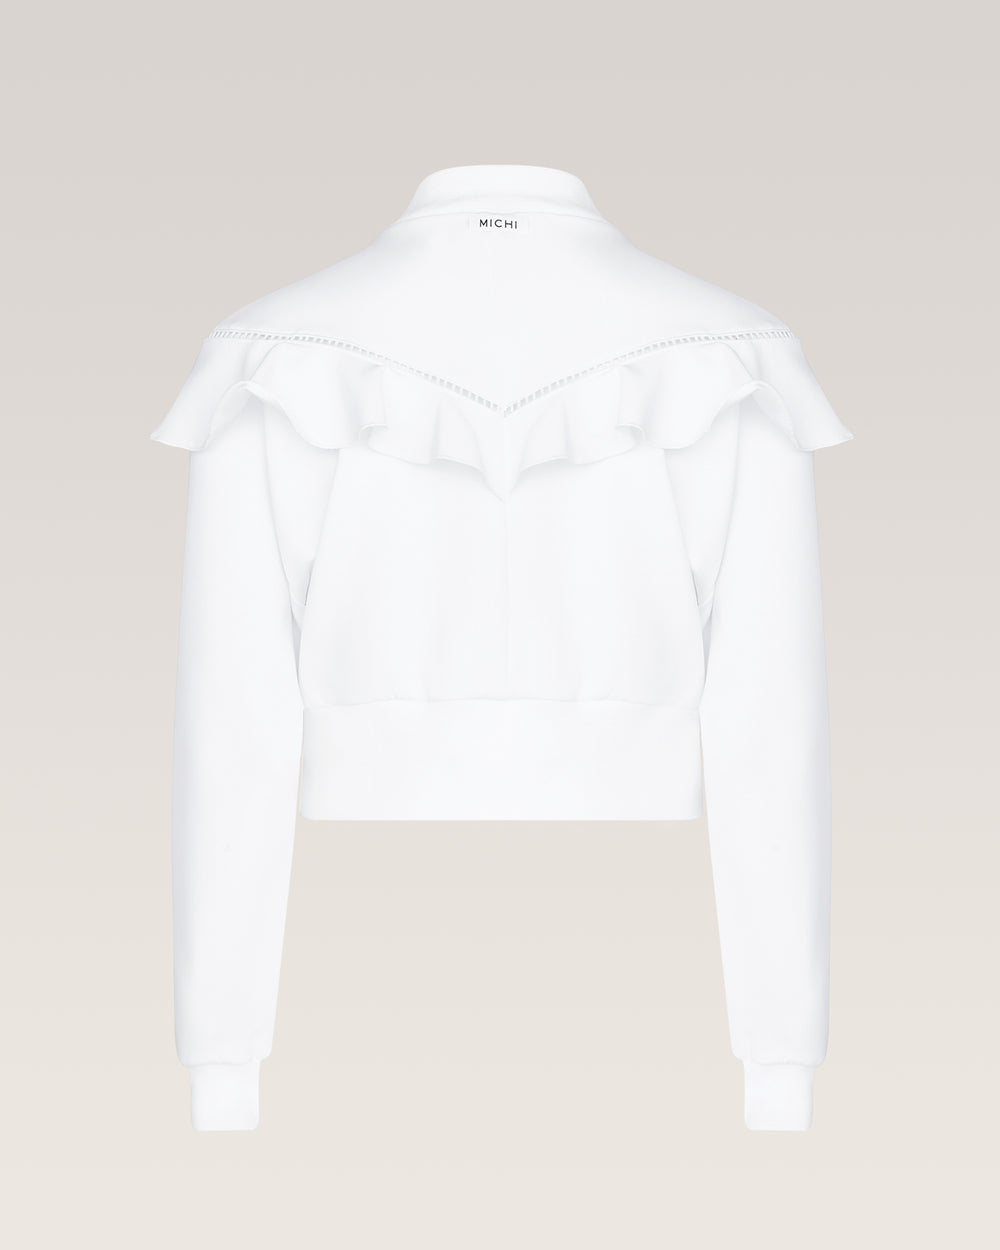 Calipso Jacket - White